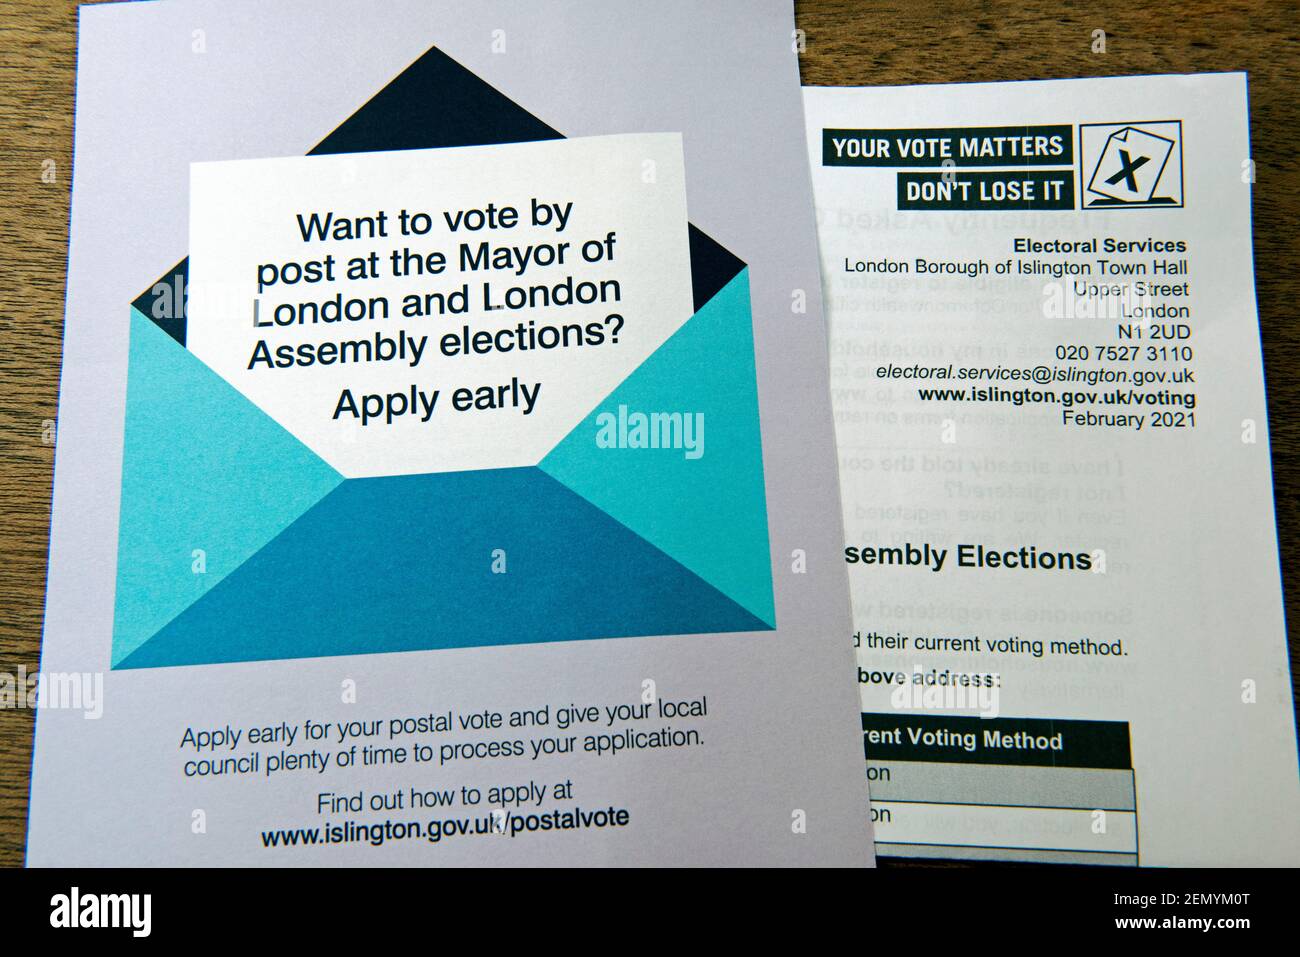 Dépliant de vote postal pour le maire de Londres pour l'élection Mayoral Et les élections de l'Assemblée de Londres 2021 avec le formulaire d'inscription électorale d'Islington Londres, Royaume-Uni Banque D'Images